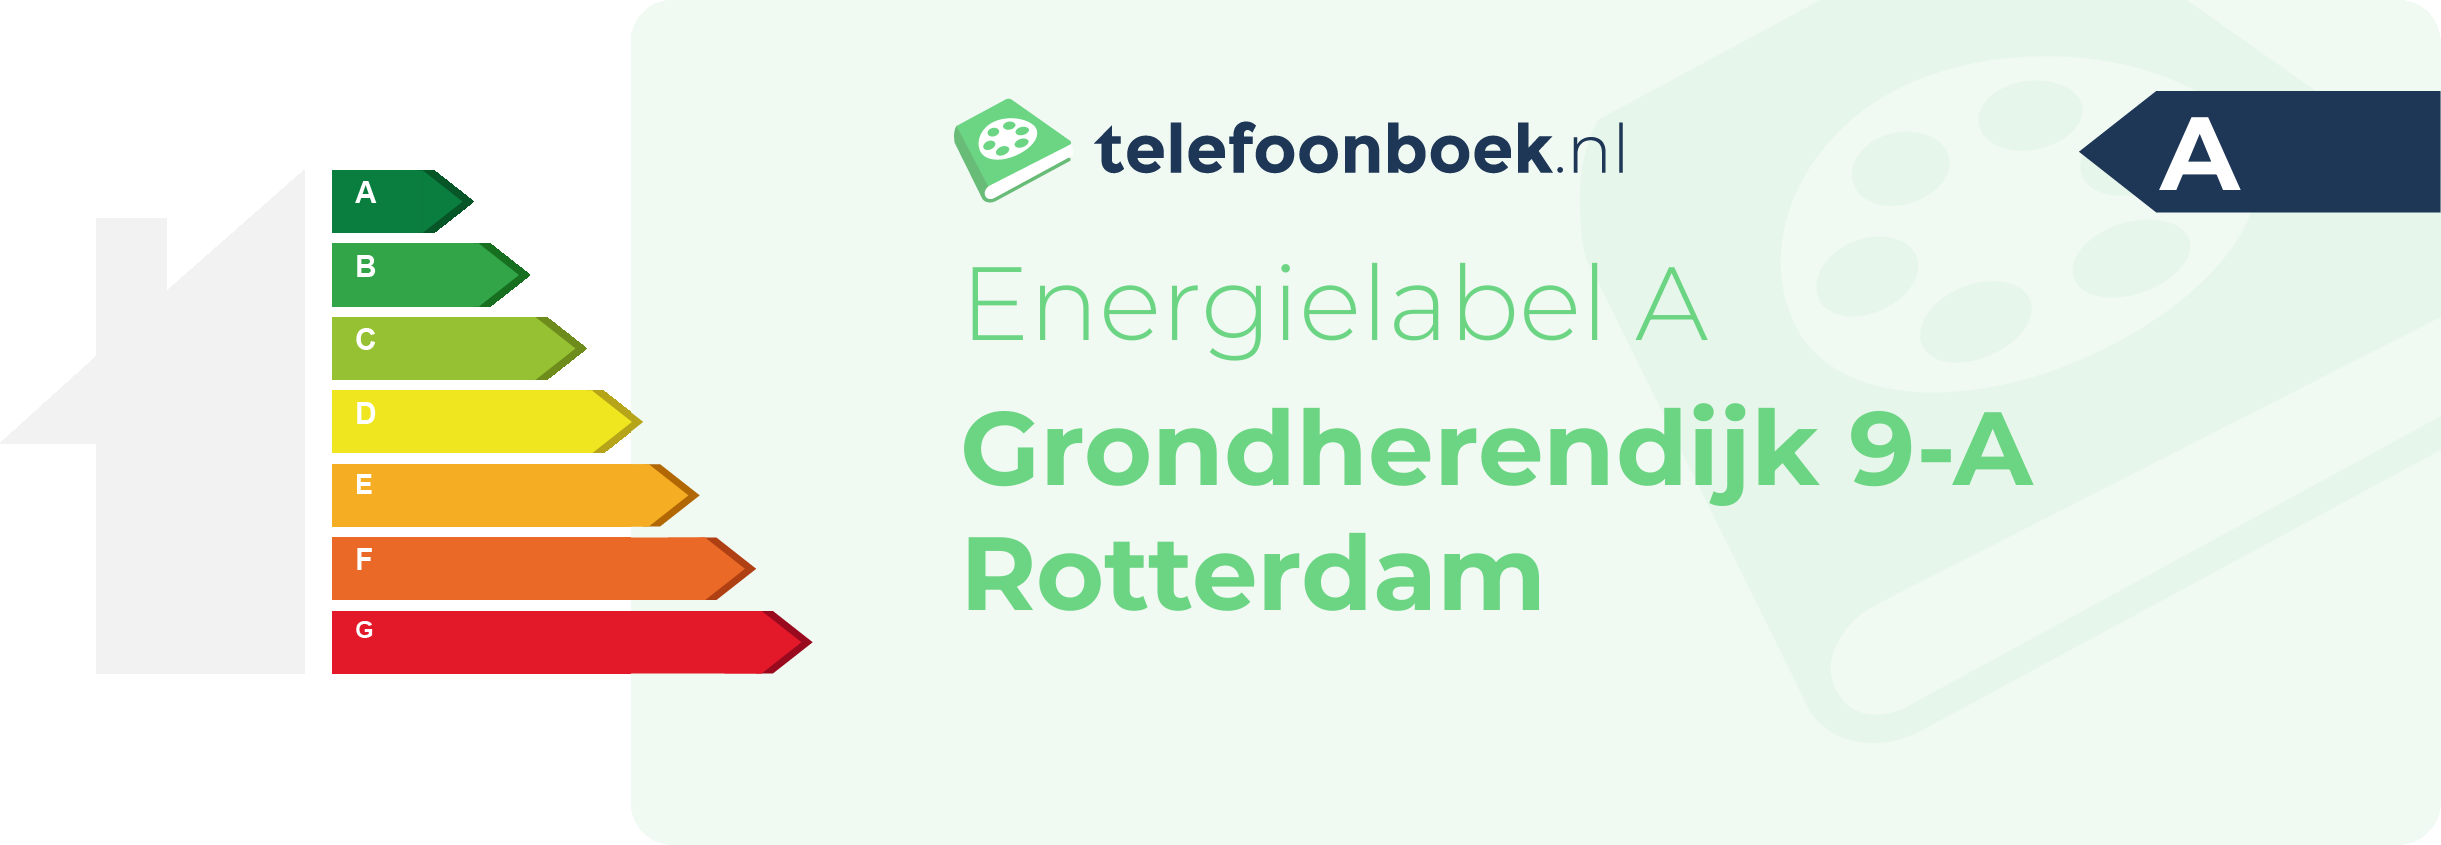 Energielabel Grondherendijk 9-A Rotterdam